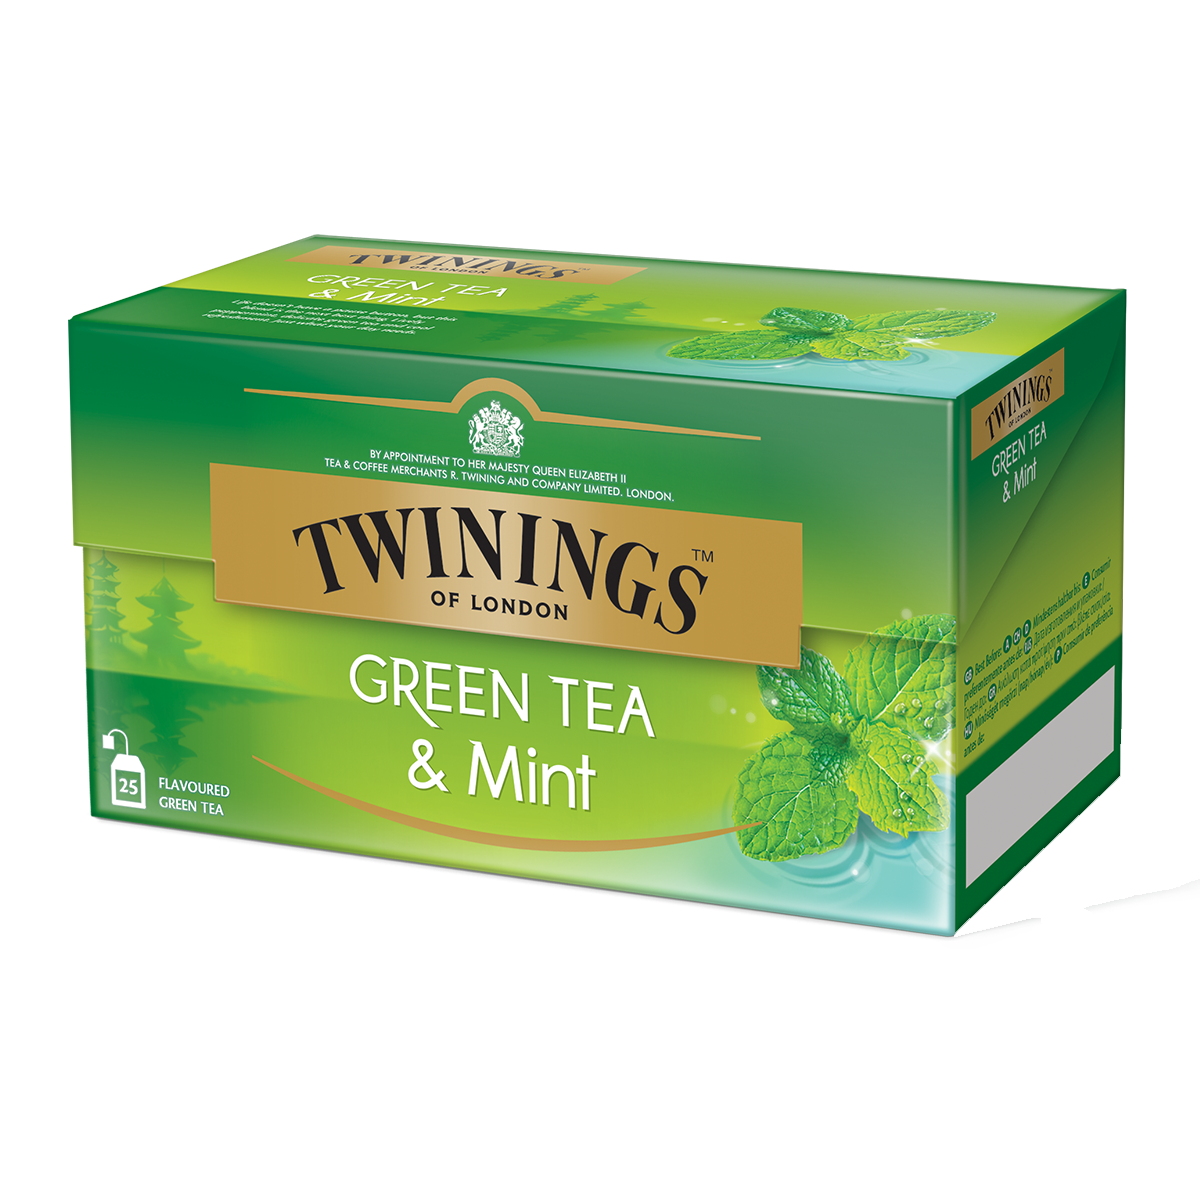  Green Tea & Mint: le thé vert le plus relevé